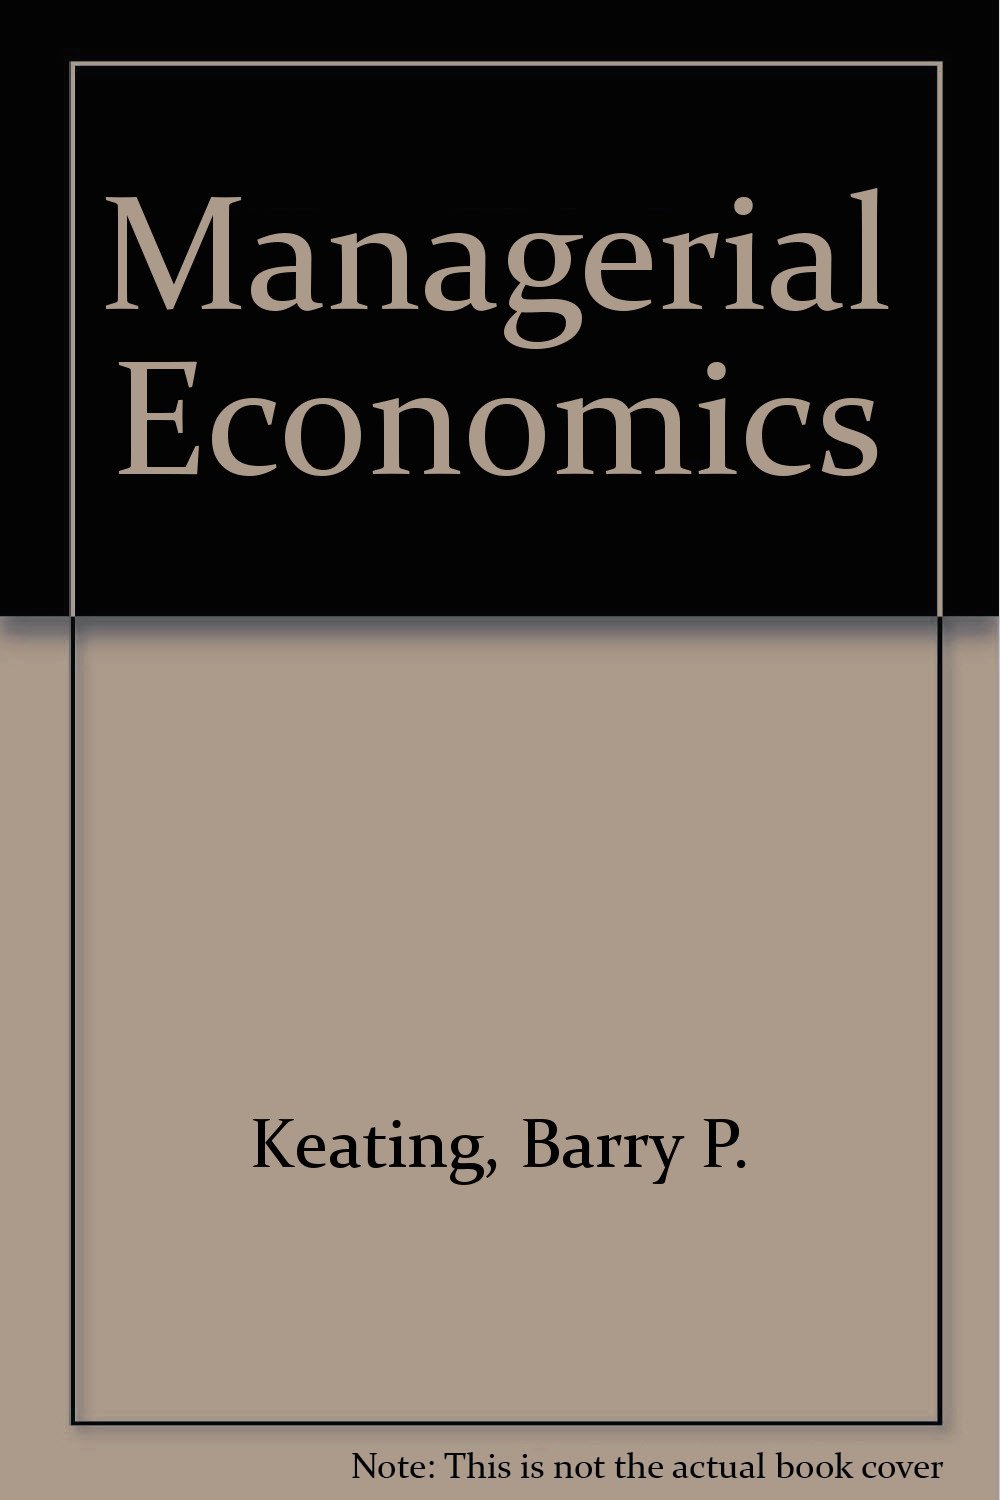 Managerial economics magazine reviews